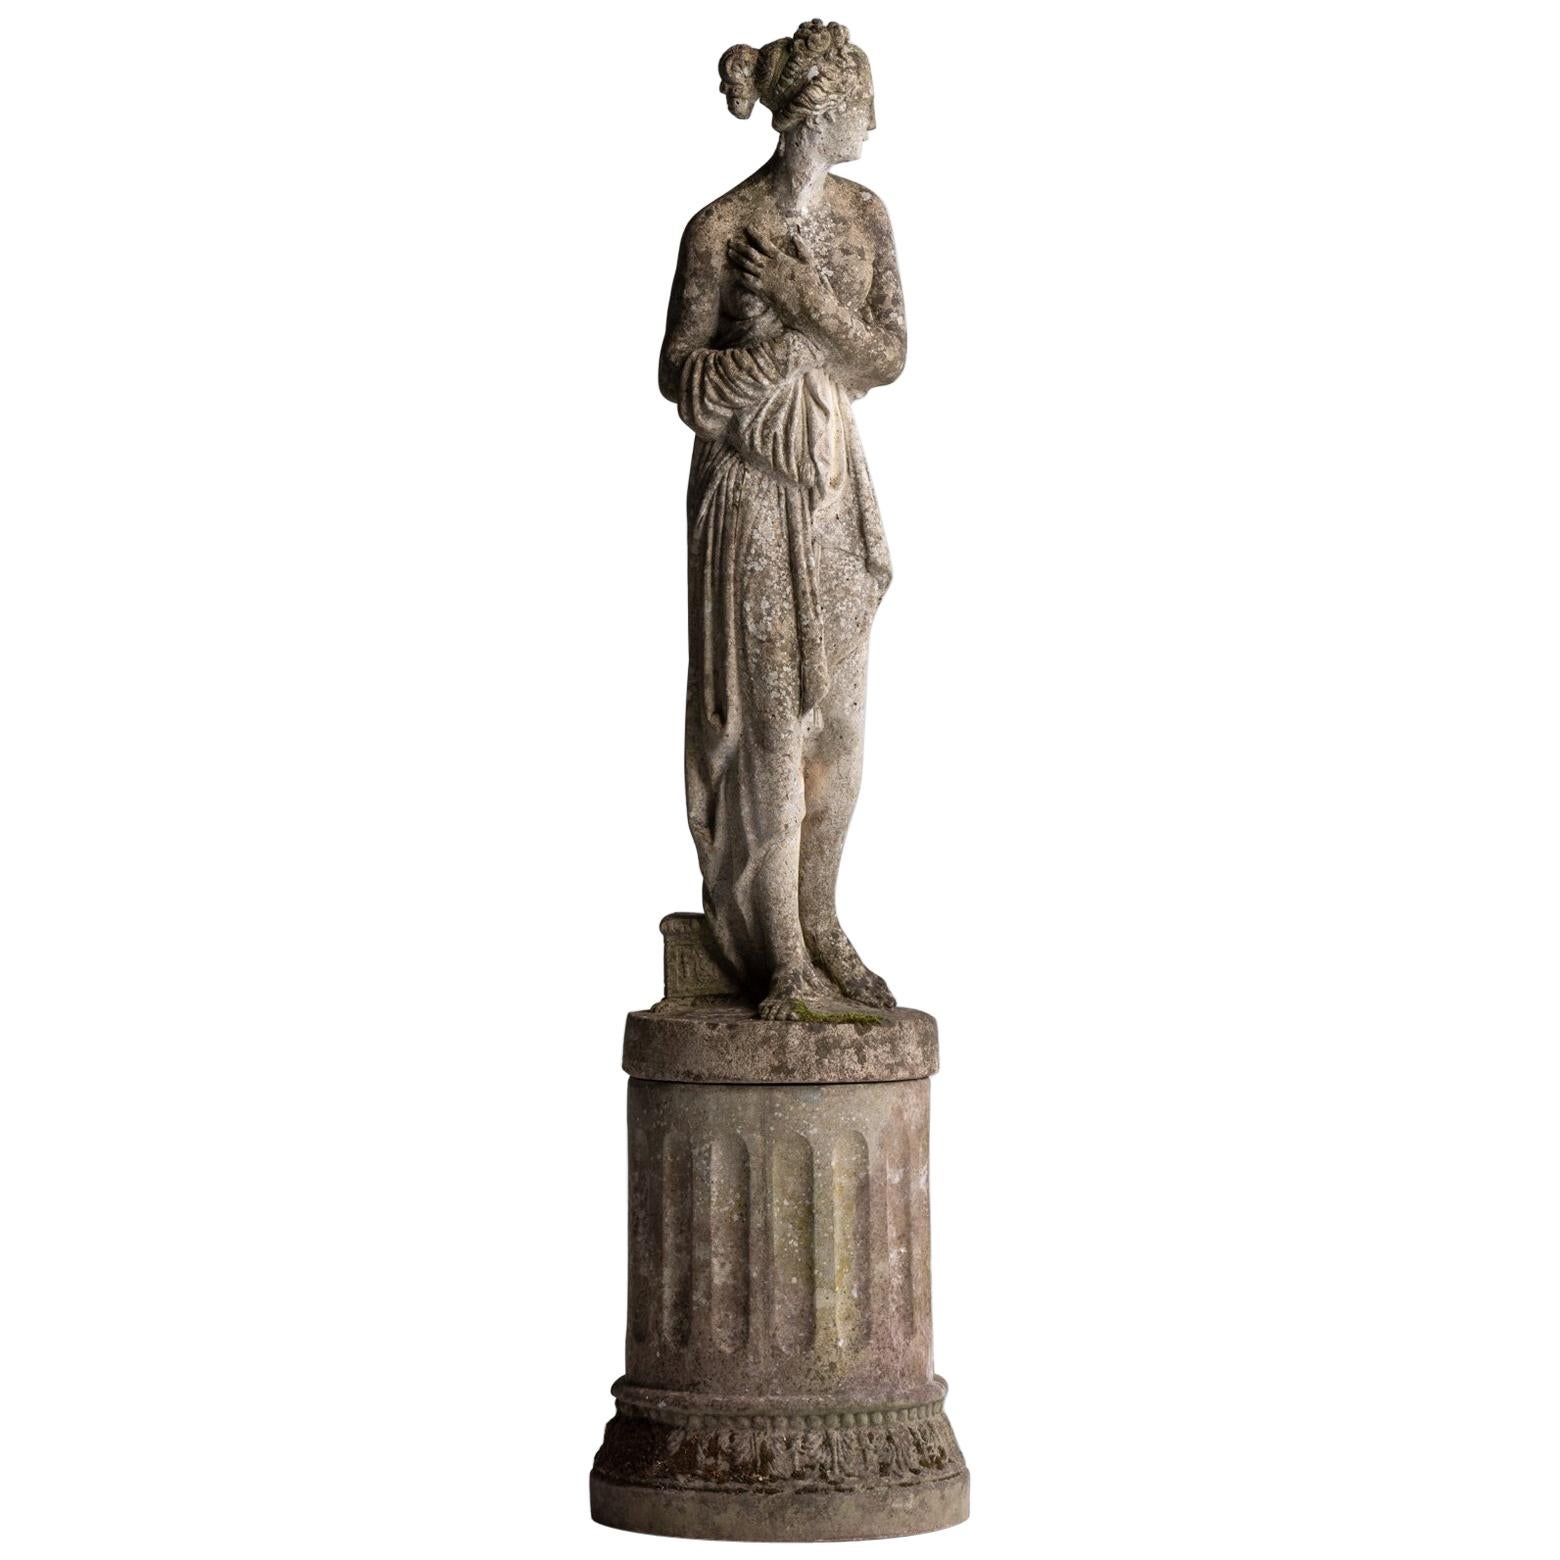 Statue of Venus with Pedestal, England, circa 1950